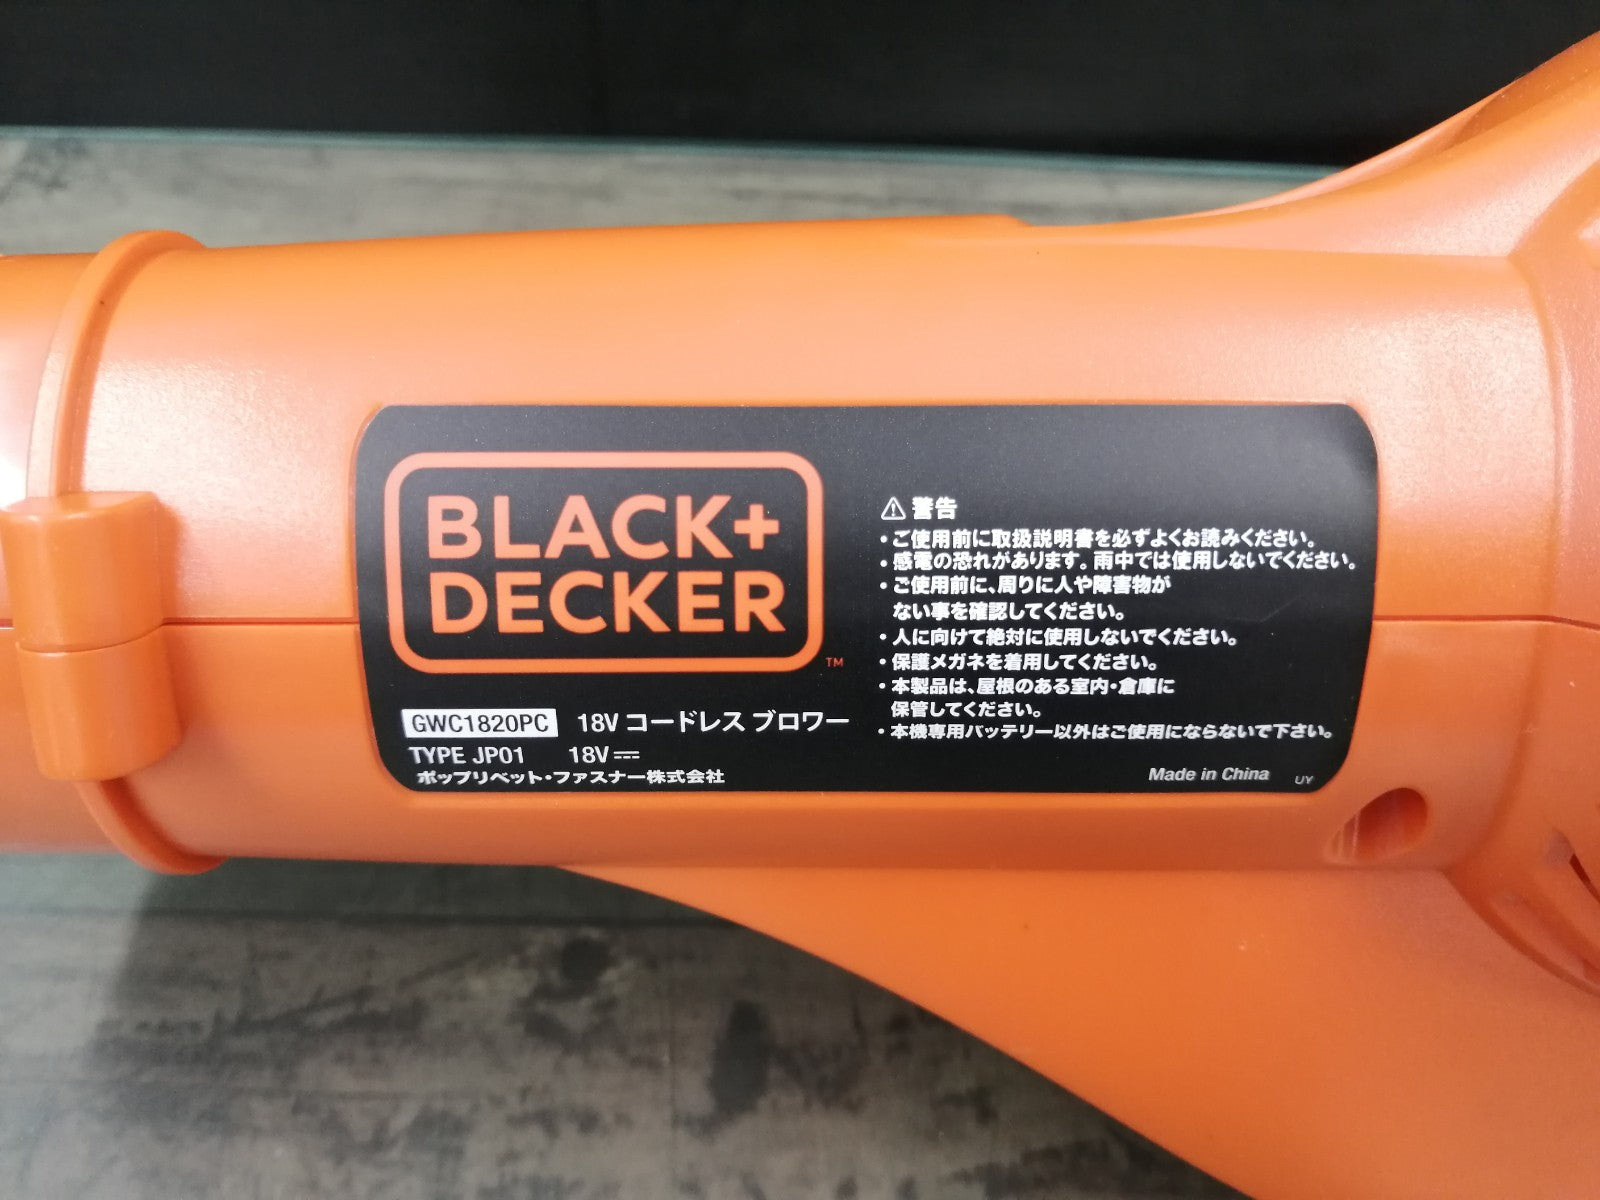 ブラックアンドデッカー GWC1820PC コードレスブロワー ブラックアンドデッカー  オレンジ - 5